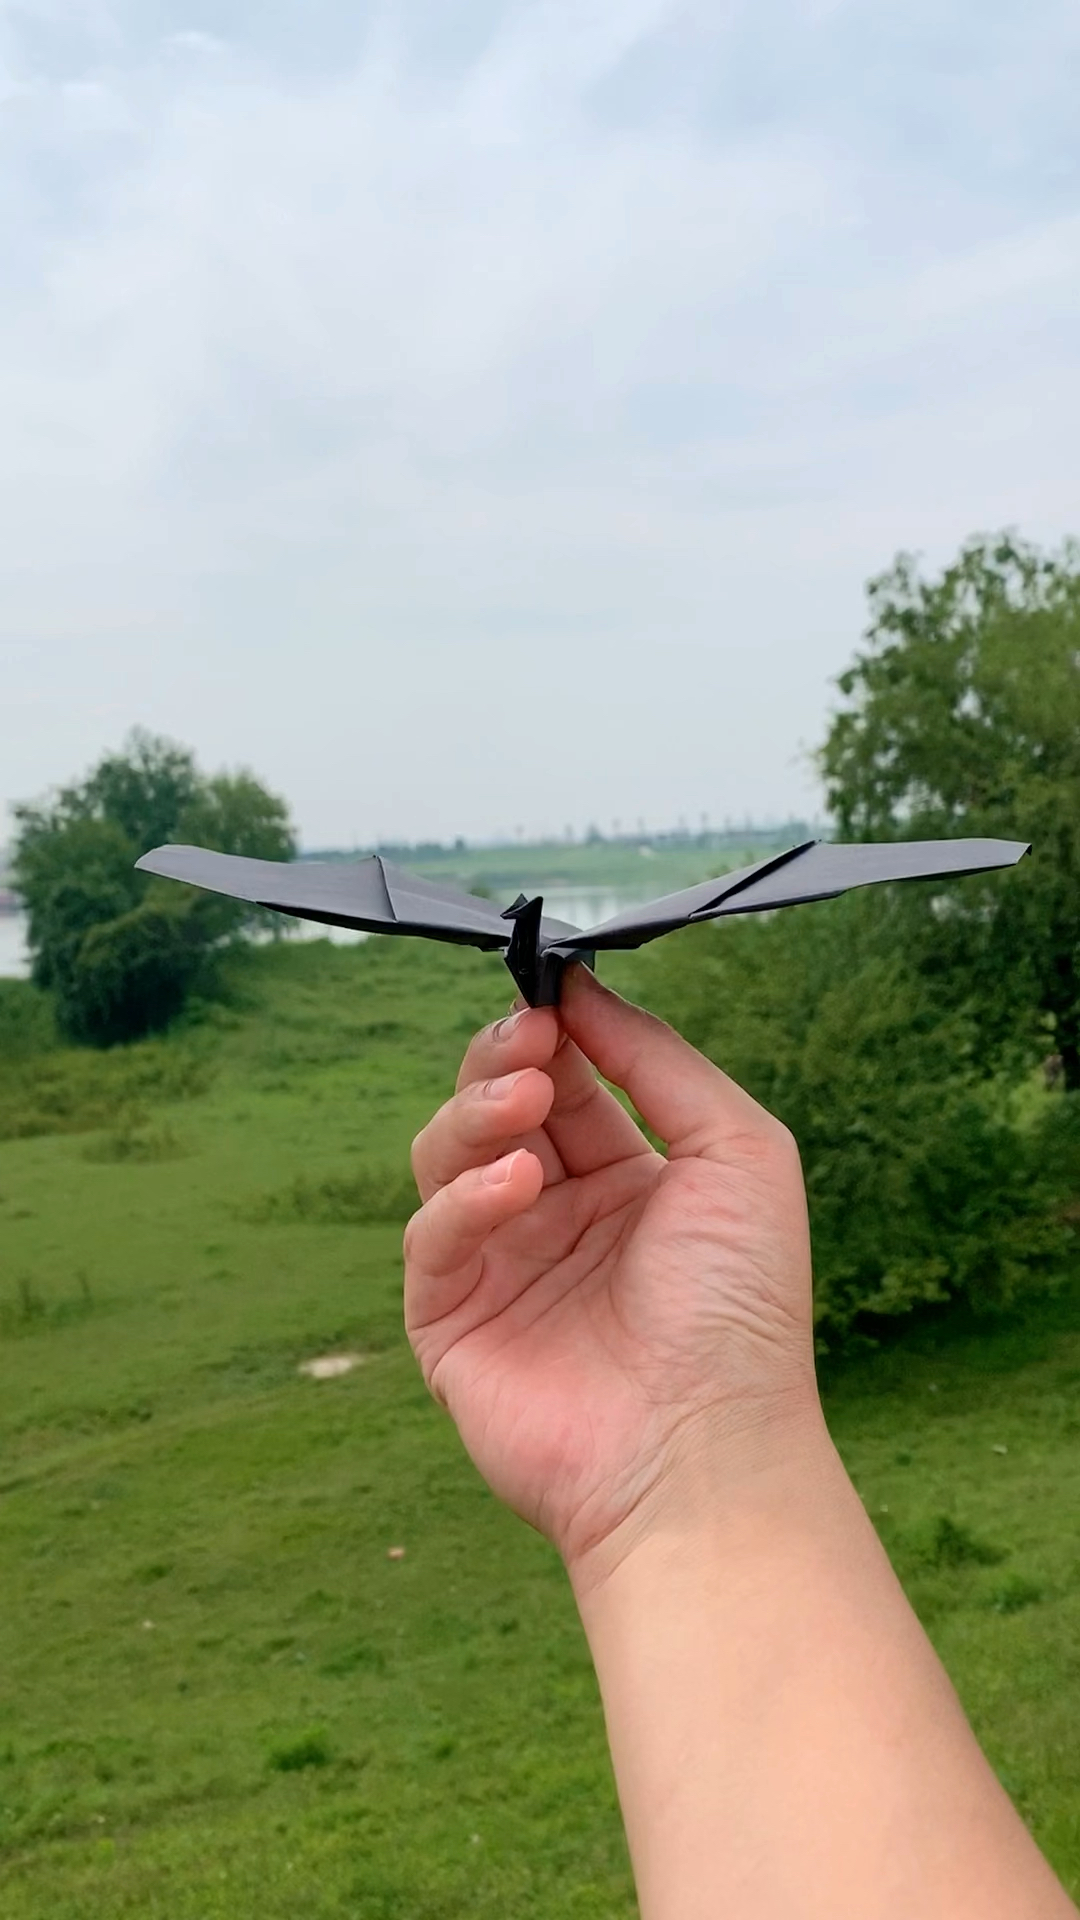 一张a4纸制作滑翔能力超强的翼龙纸飞机,你学会了吗?